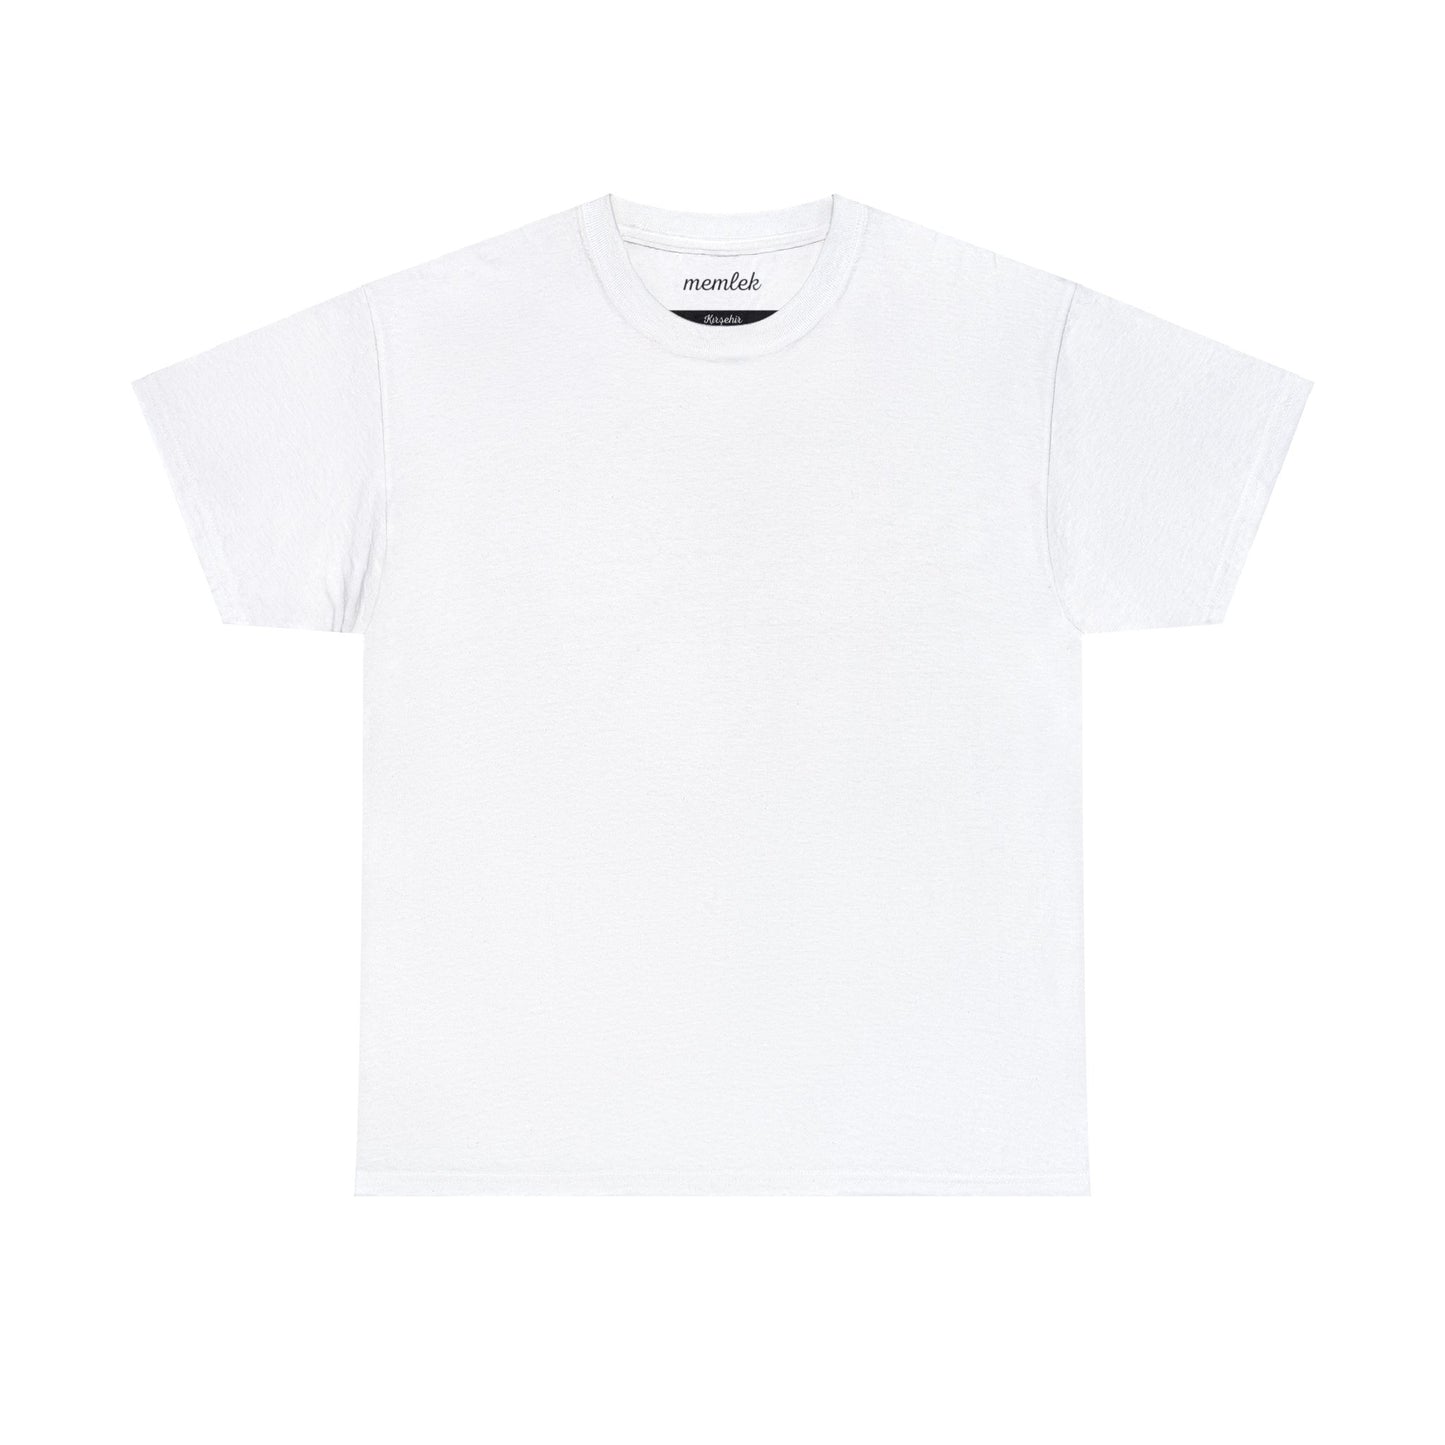 Kurt - 40 Kırşehir - T-Shirt - Back Print - Black/White